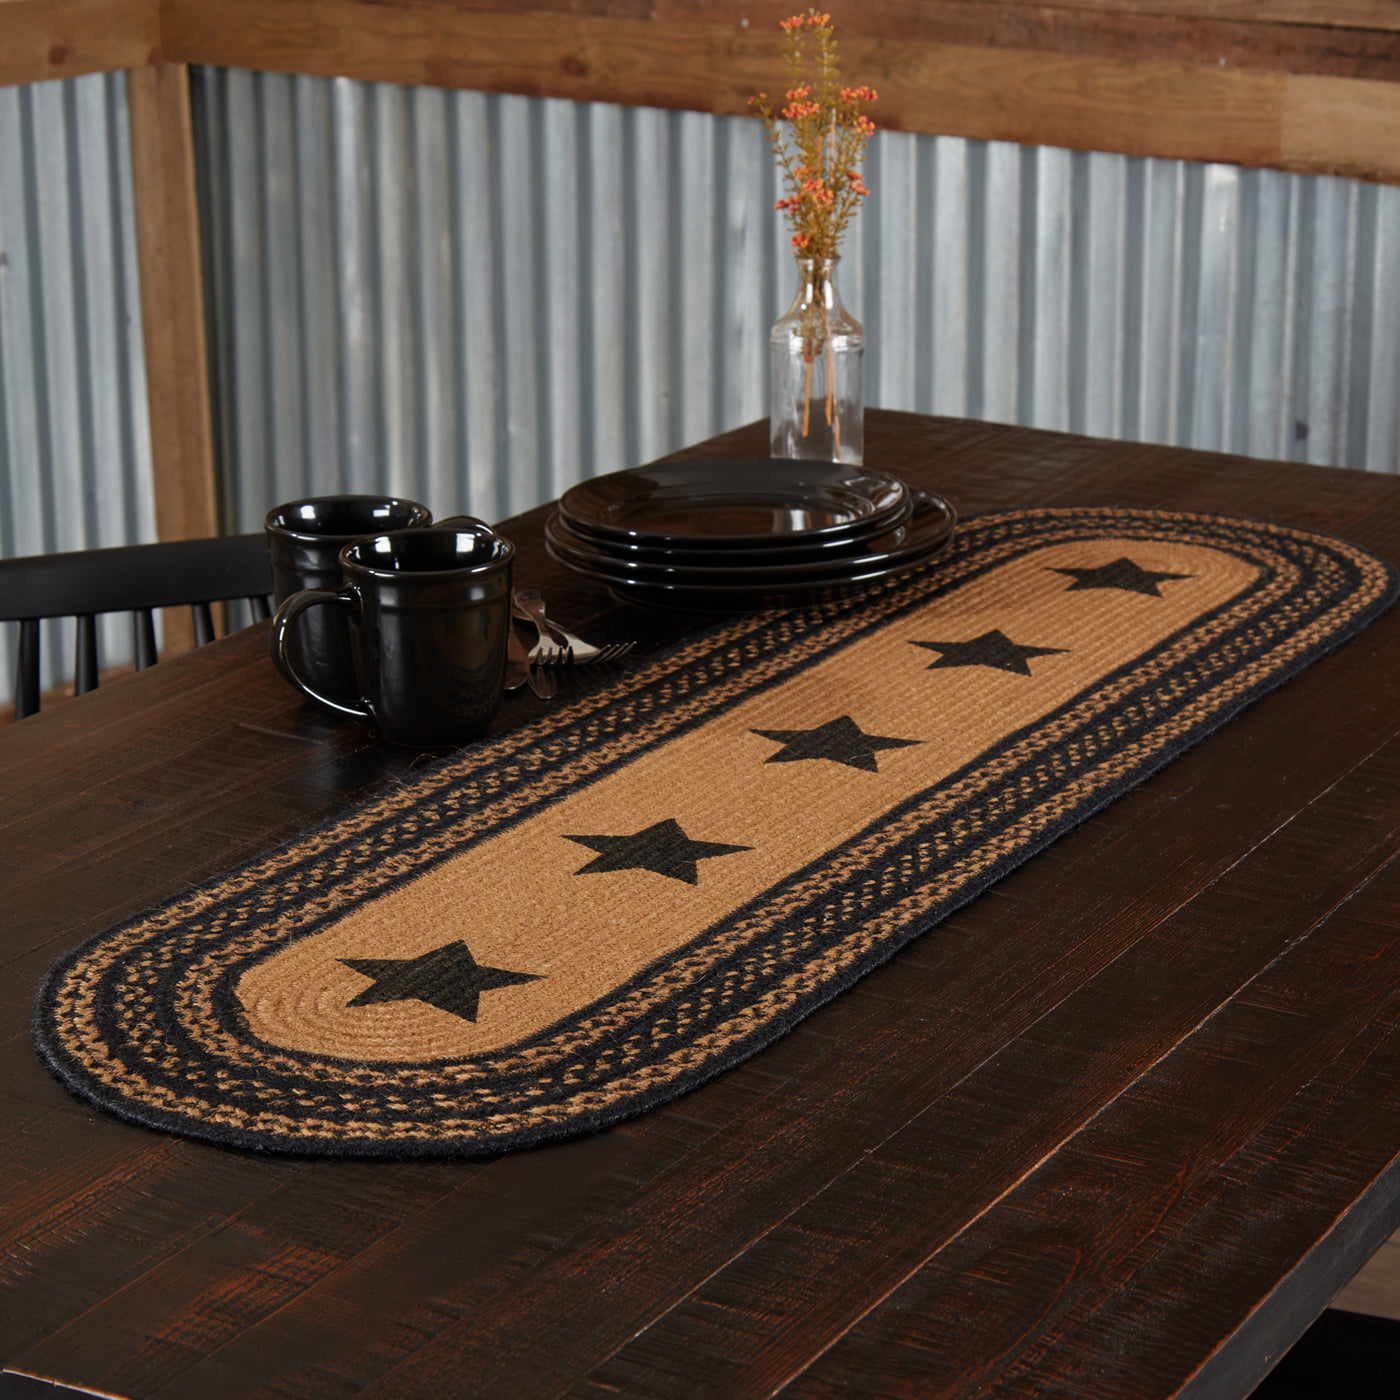 💙 Farmhouse Stencil Stars Black and Tan Table Runner 13" x 48"